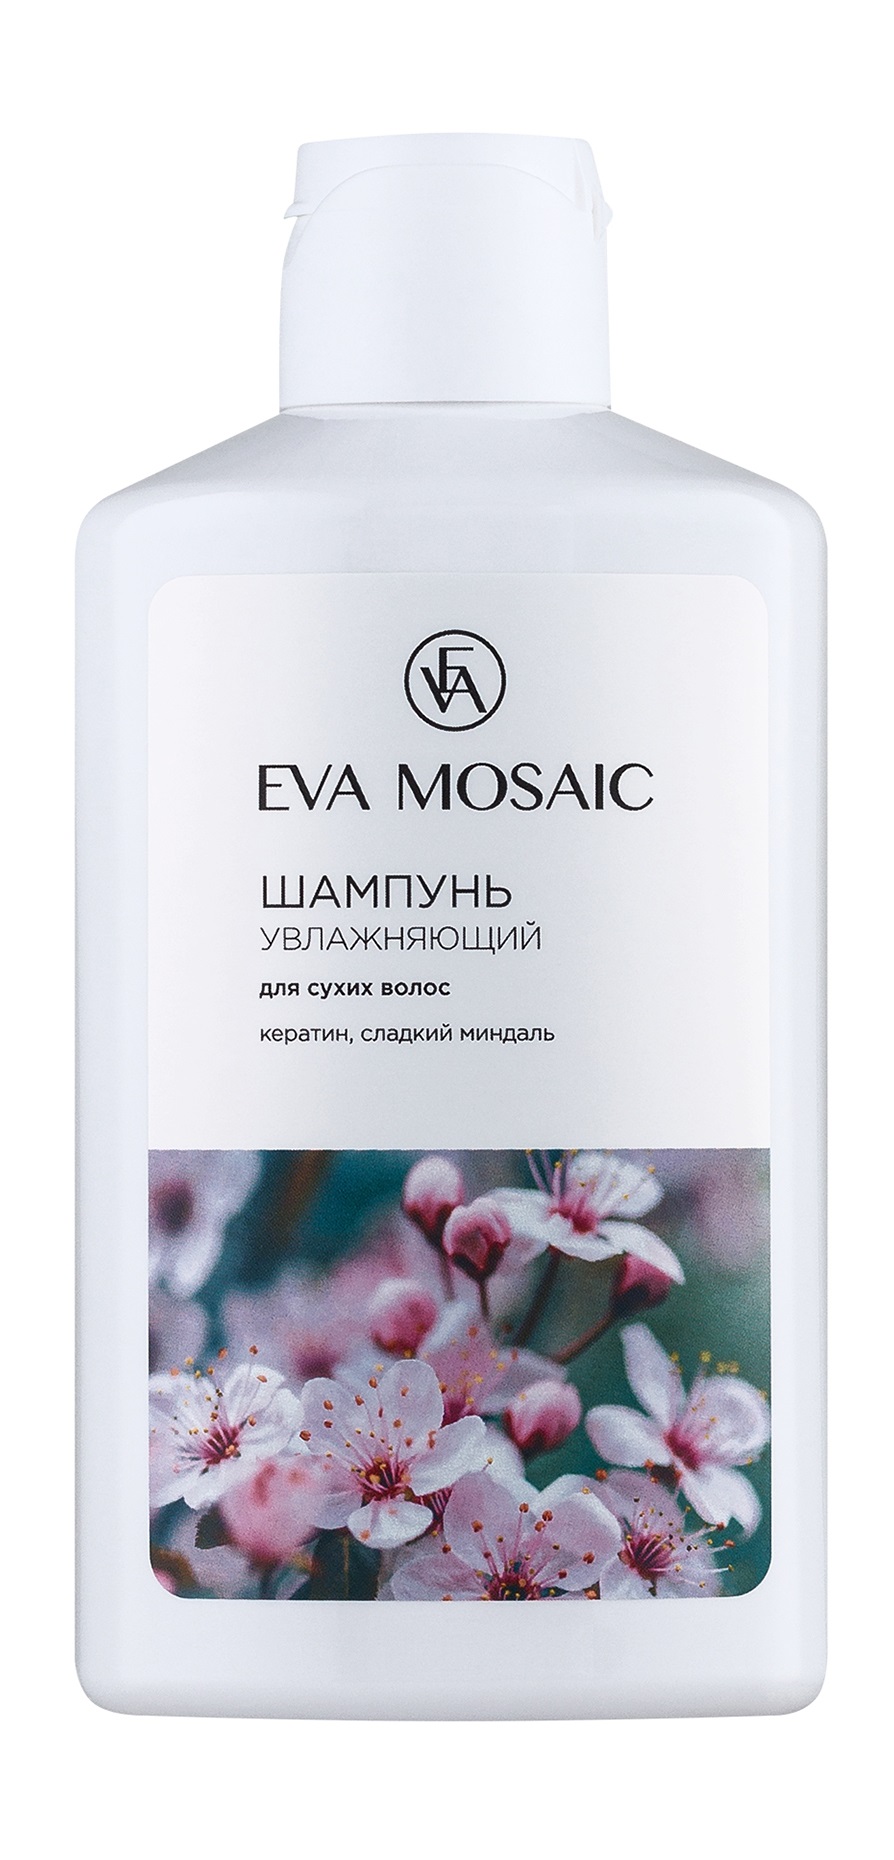 Шампунь Увлажняющий Для сухих волос Eva Mosaic с кератином и сладким миндалем